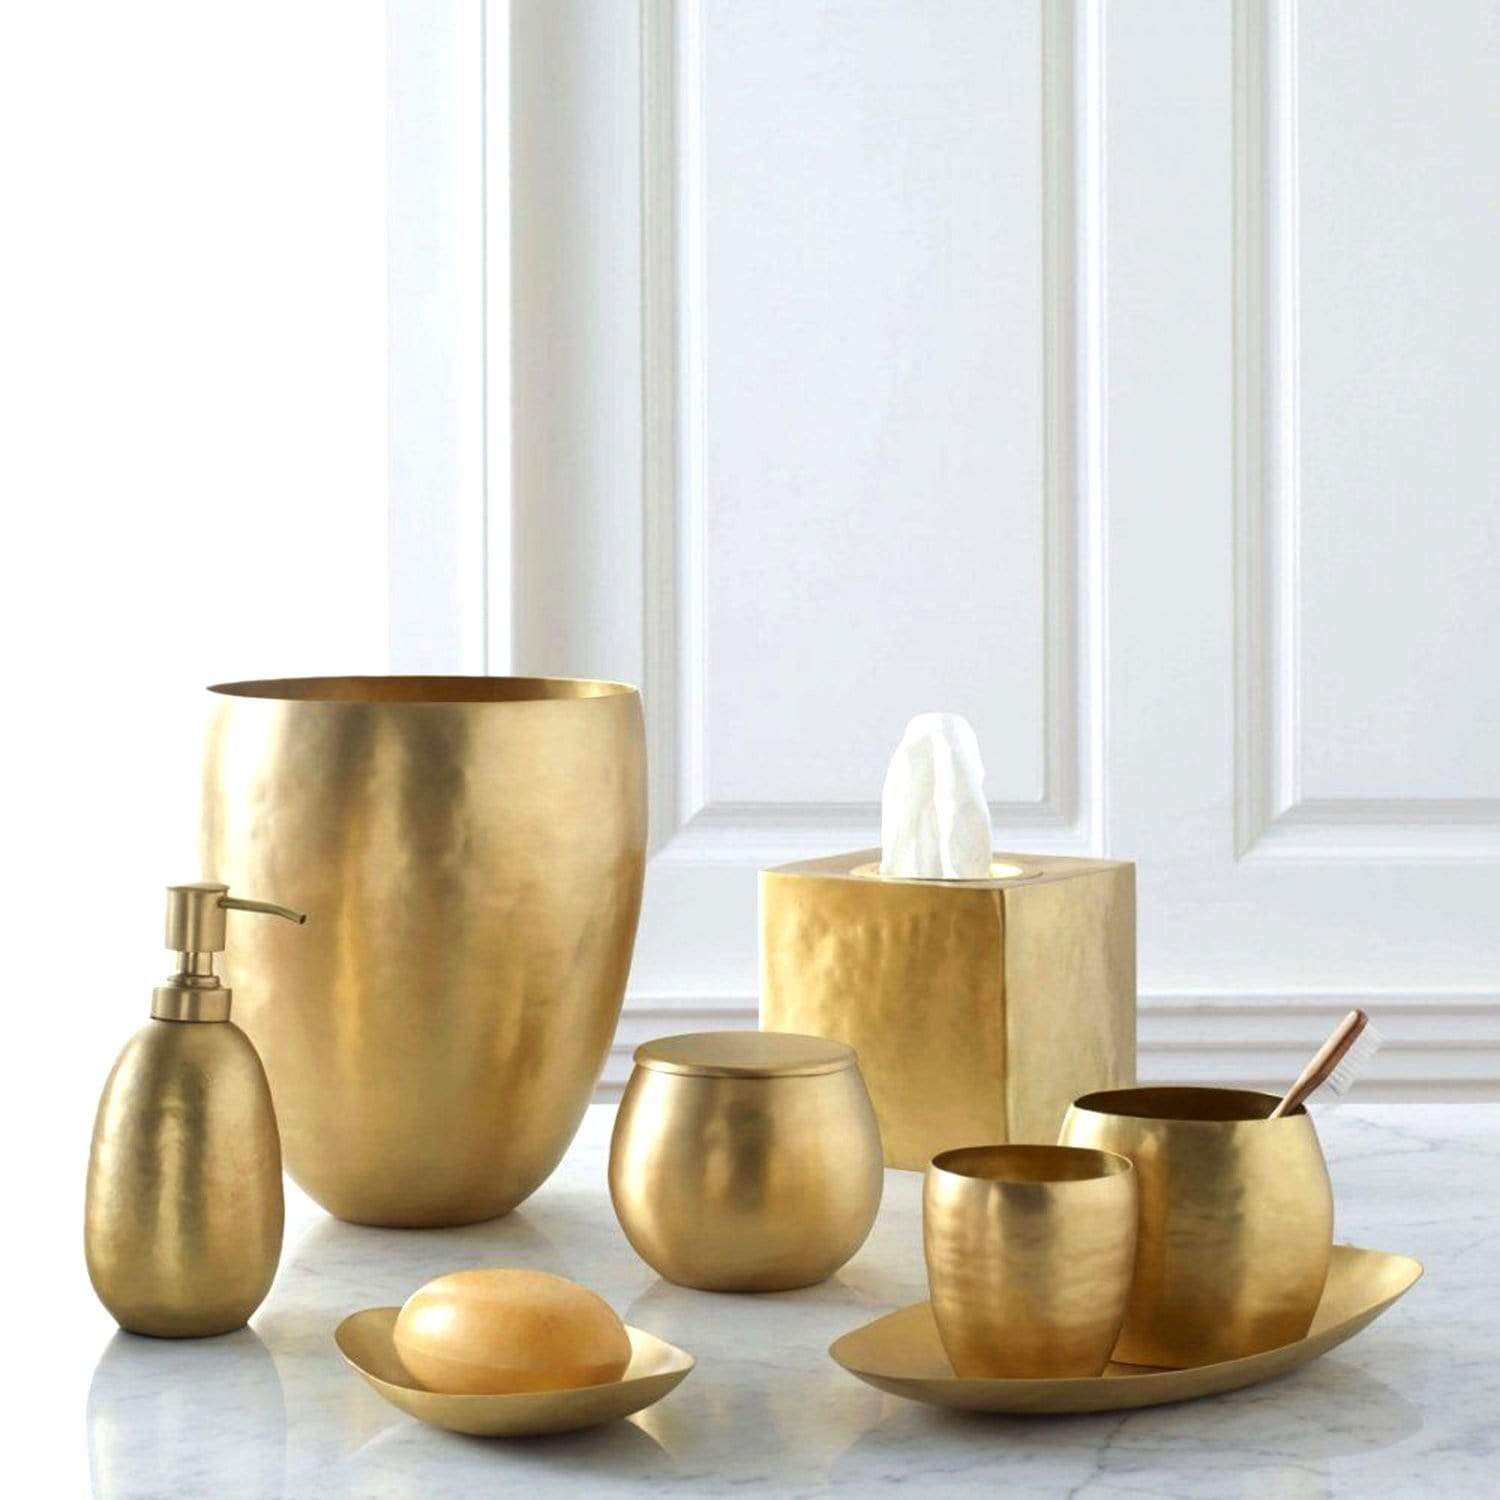 Kassatex Nile Brass Soap Dish - Gold - ANL-SD - Jashanmal Home